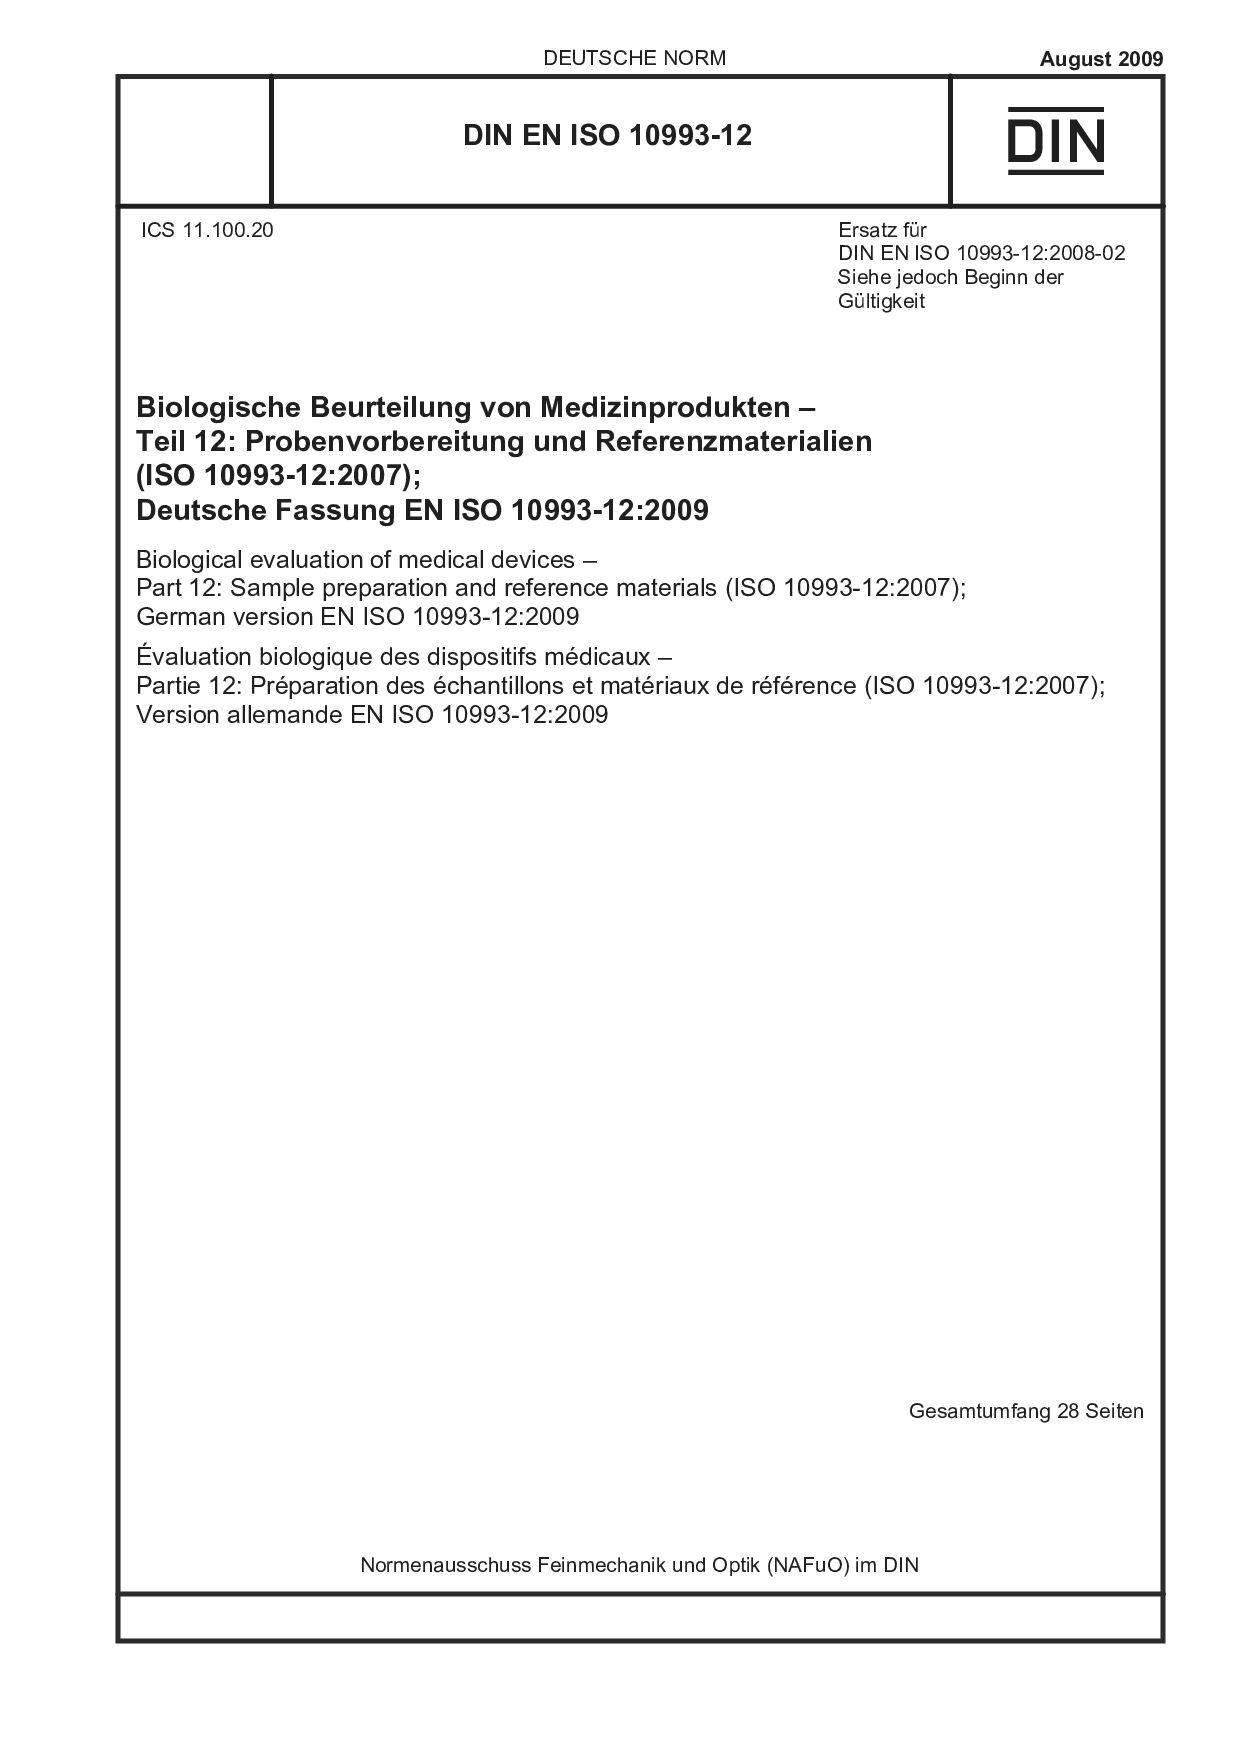 DIN EN ISO 10993-12:2009